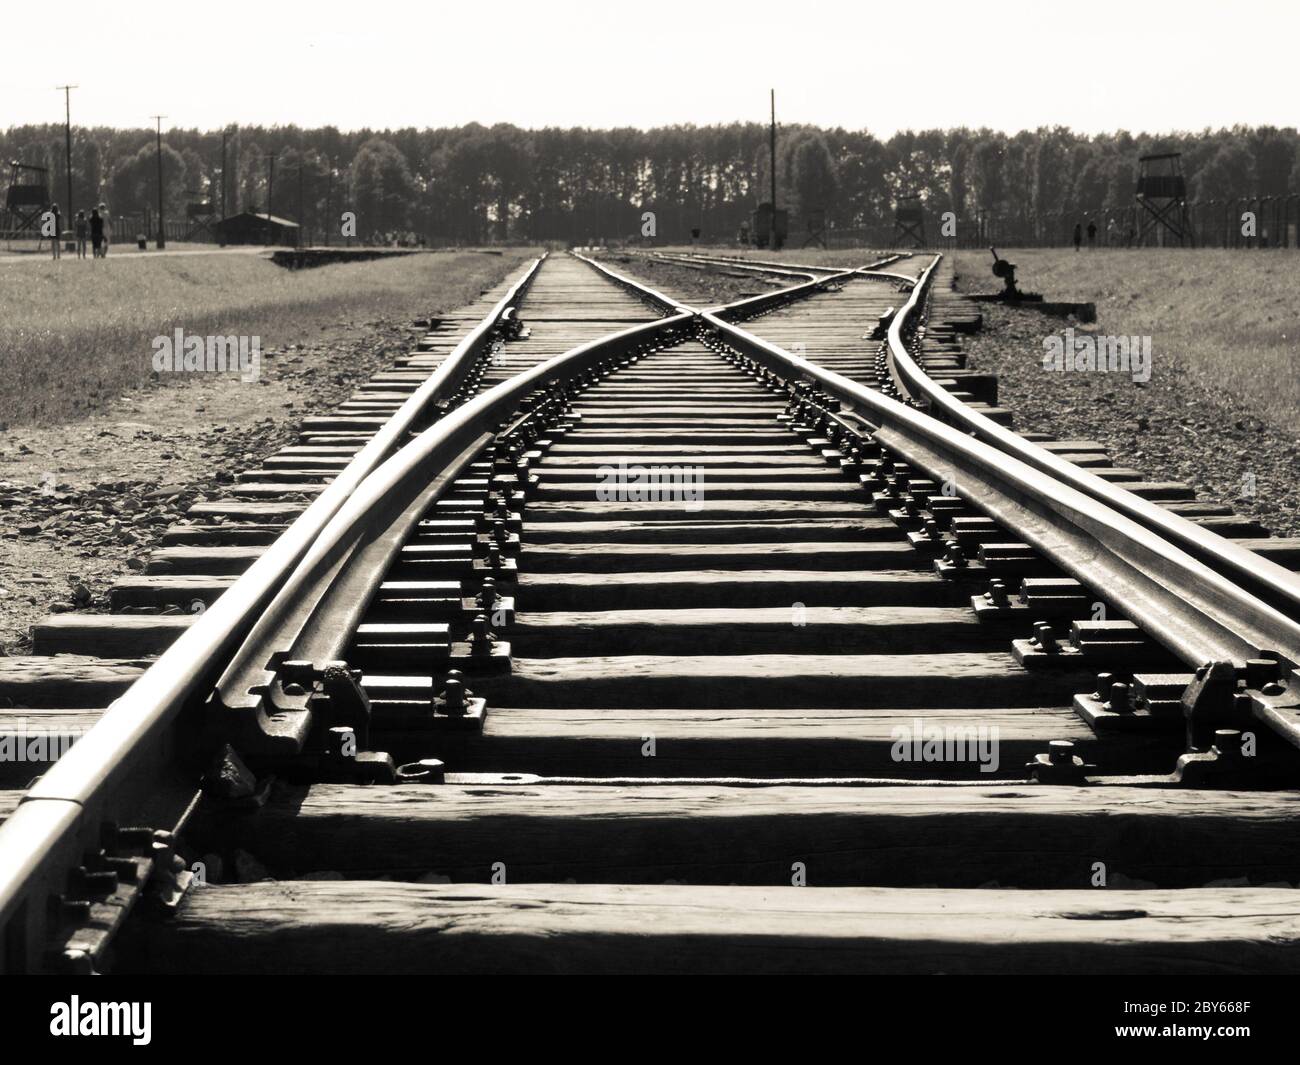 Bahnsteig im Konzentrationslager Auschwitz - Birkenau, oder Oswiecim - Brzezinka, Polen. Low-Angle-Shot. Schwarzweiß-Bild. Stockfoto